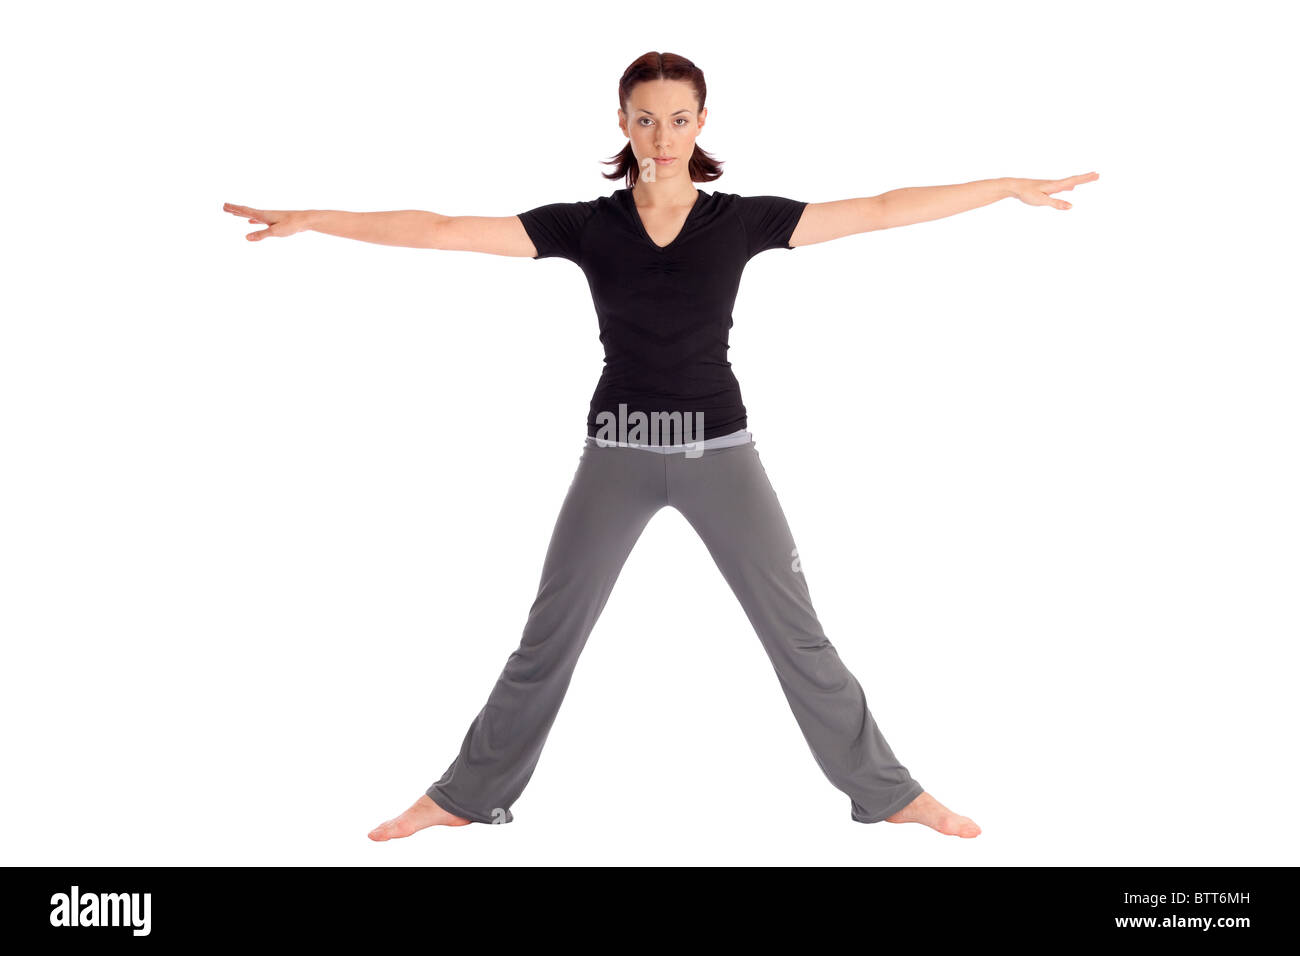 Junge Frau Yoga Übung Krieger namens passen (Sanskrit-Name: Virabhadrasana), isoliert auf weißem Hintergrund. Stockfoto